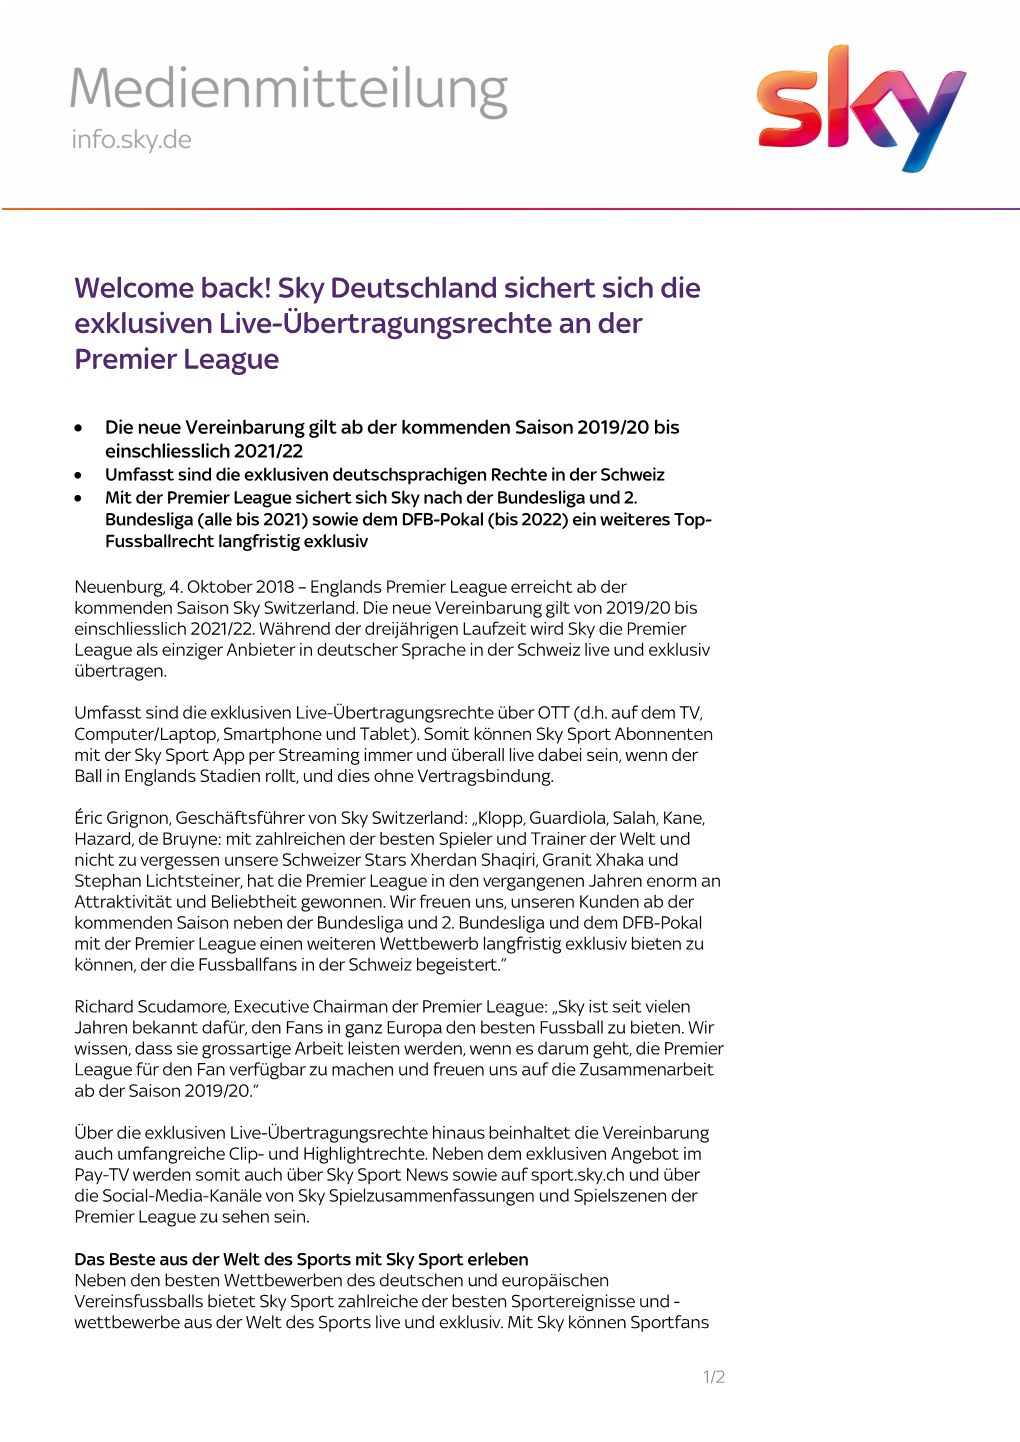 Welcome Back! Sky Deutschland Sichert Sich Die Exklusiven Live-Übertragungsrechte an Der Premier League